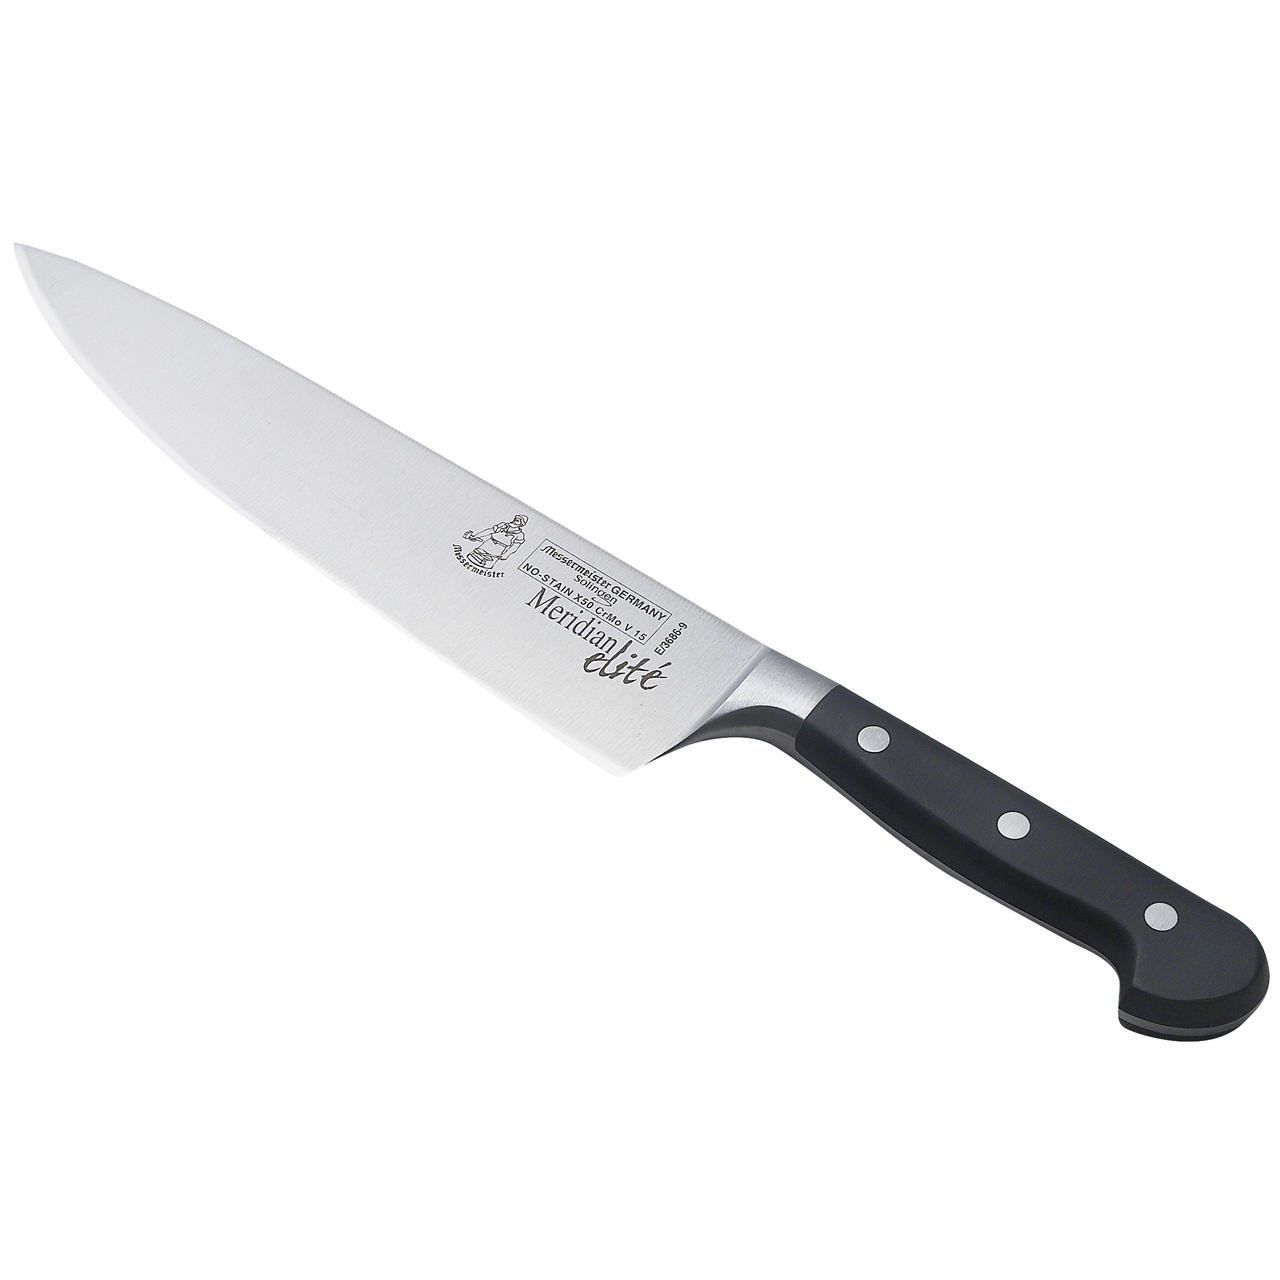 Messermeister Meridian Elite 9 Chef's Knife - KnifeCenter - E/3686-9